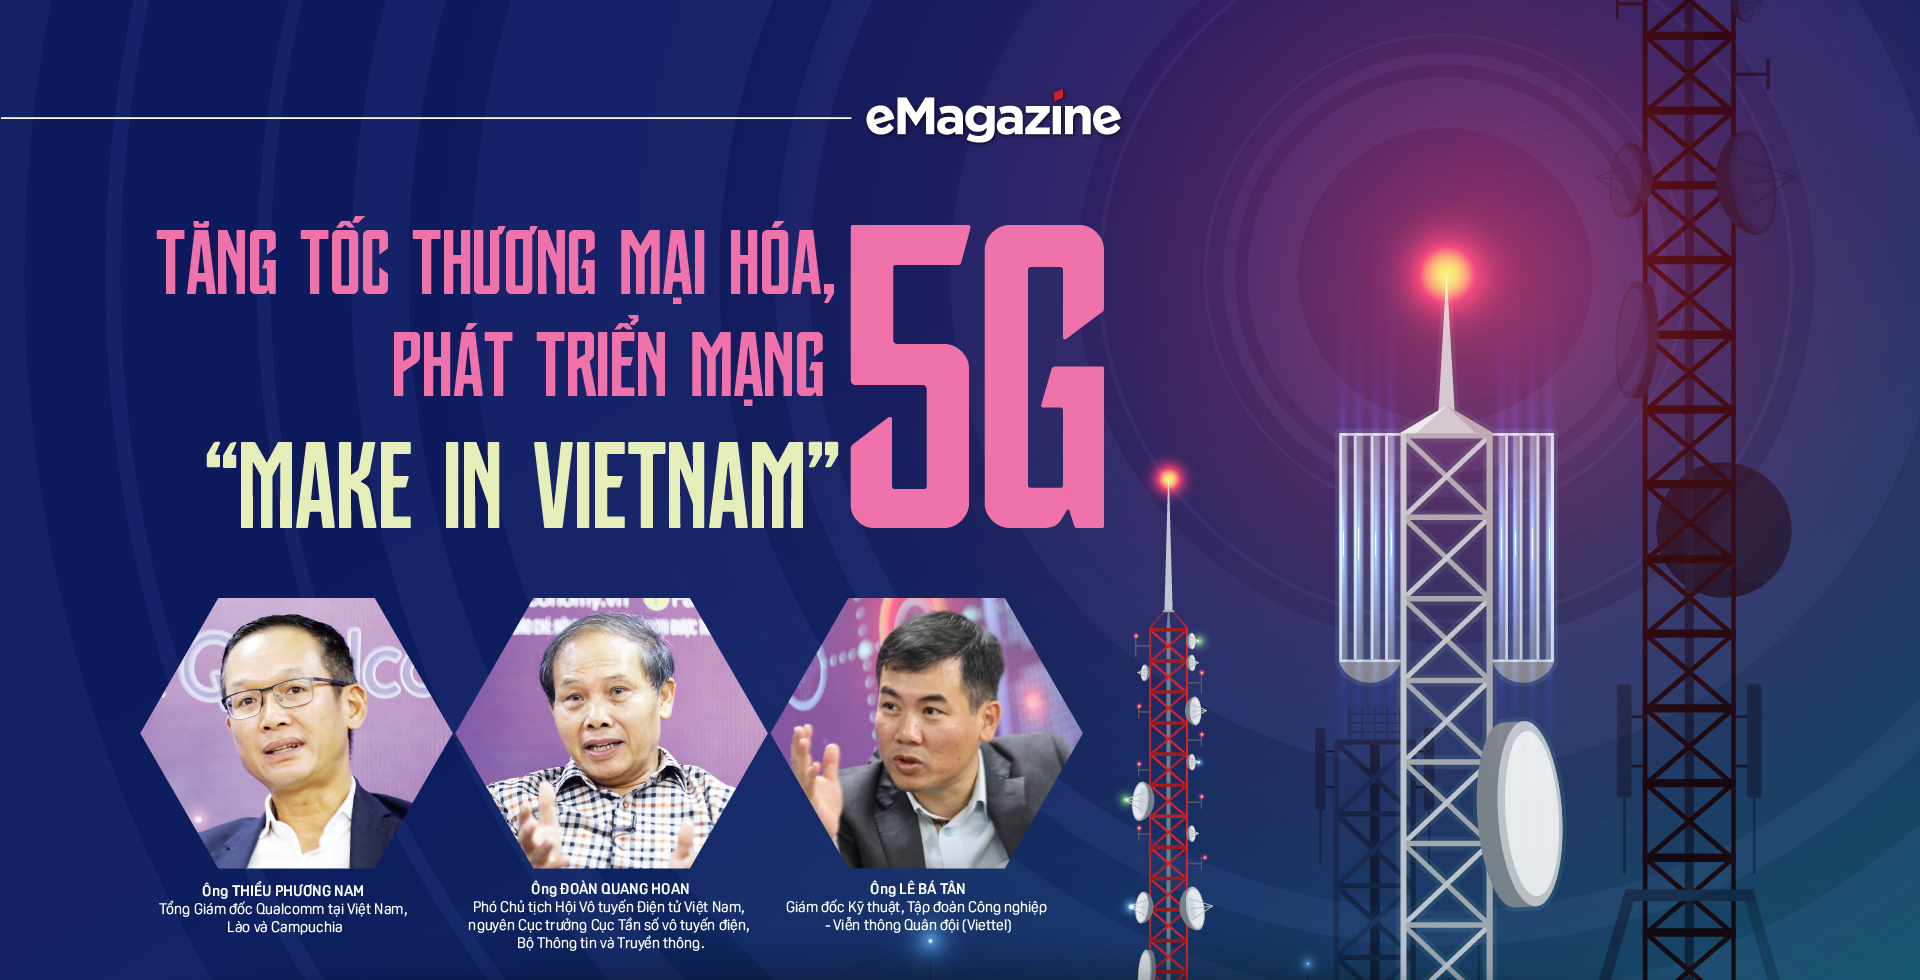 Tăng tốc thương mại hóa, phát triển mạng 5G “Make in Vietnam” - Ảnh 1